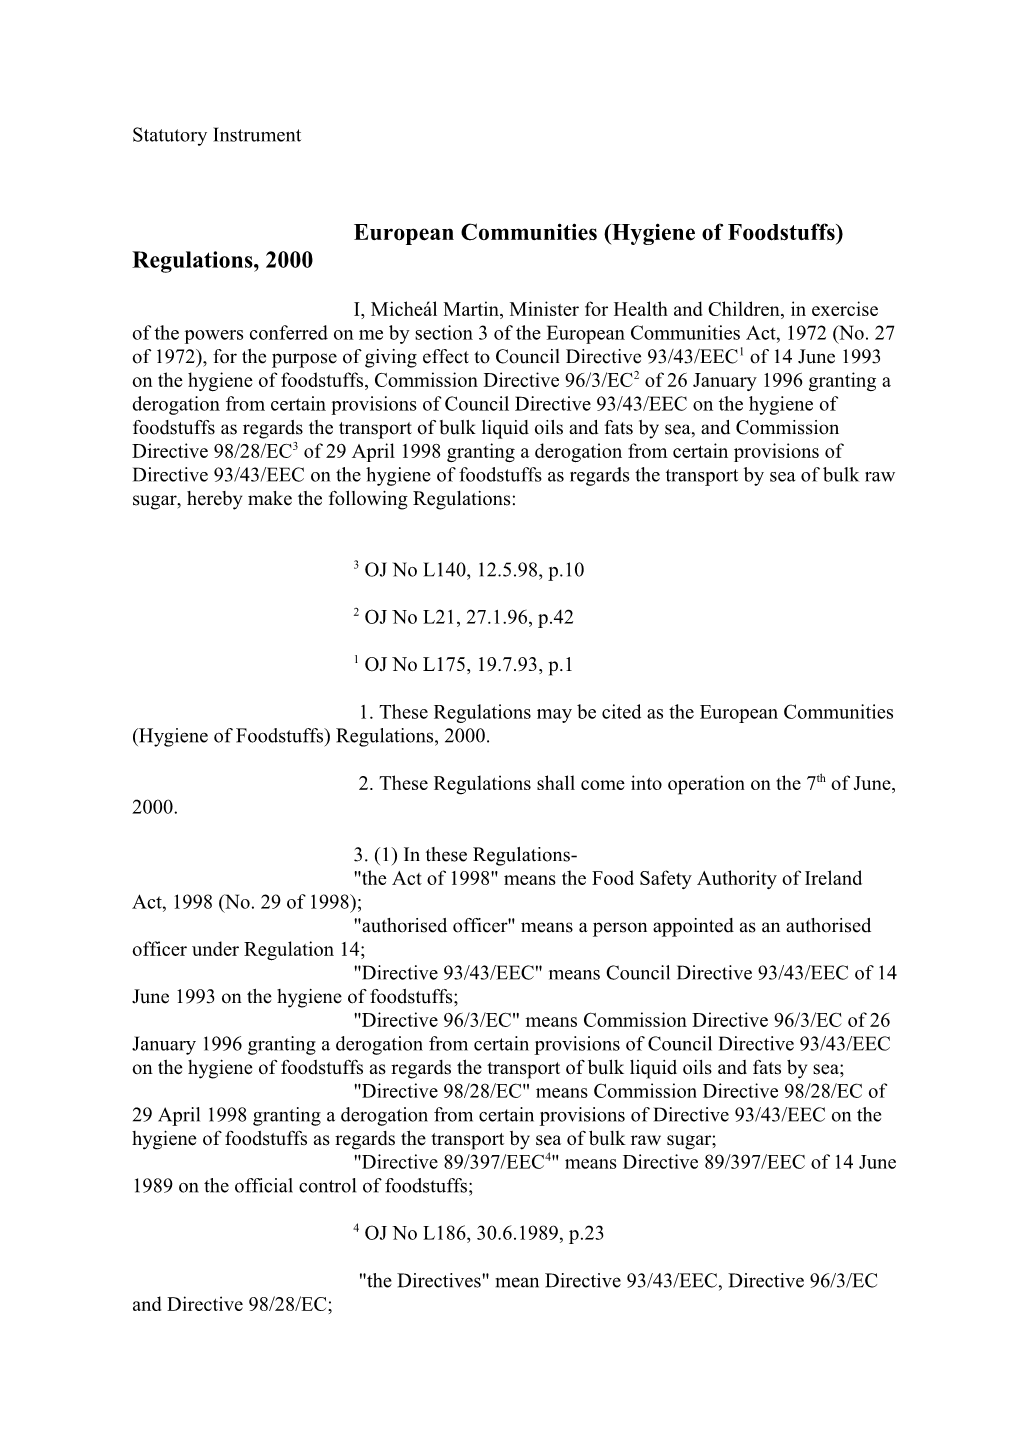 European Communities (Hygiene of Foodstuffs) Regulations, 2000